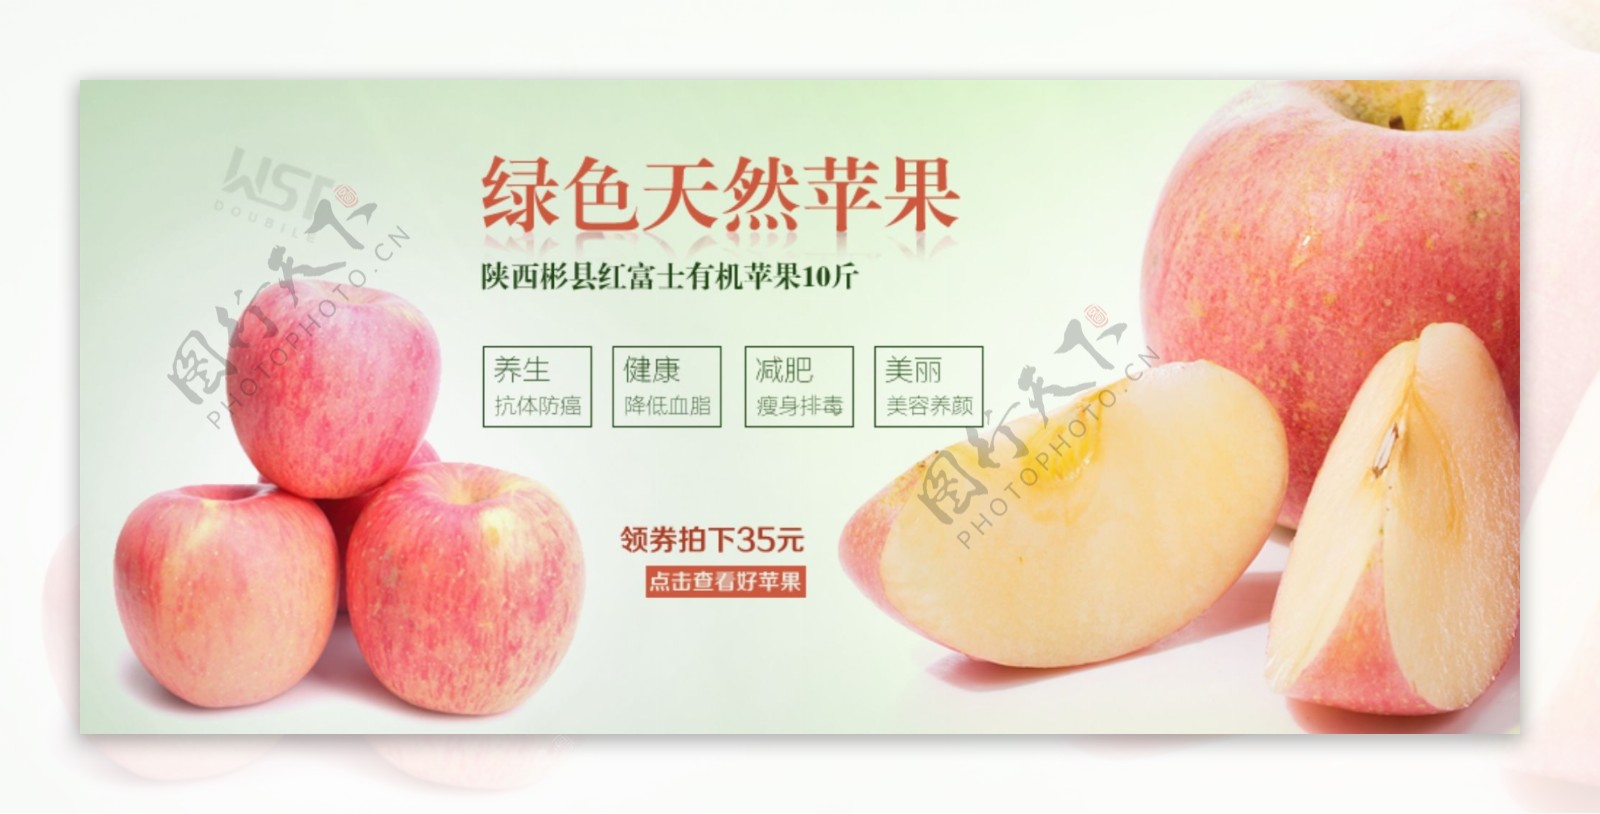 红富士有机苹果绿色水果彬县农家苹果海报